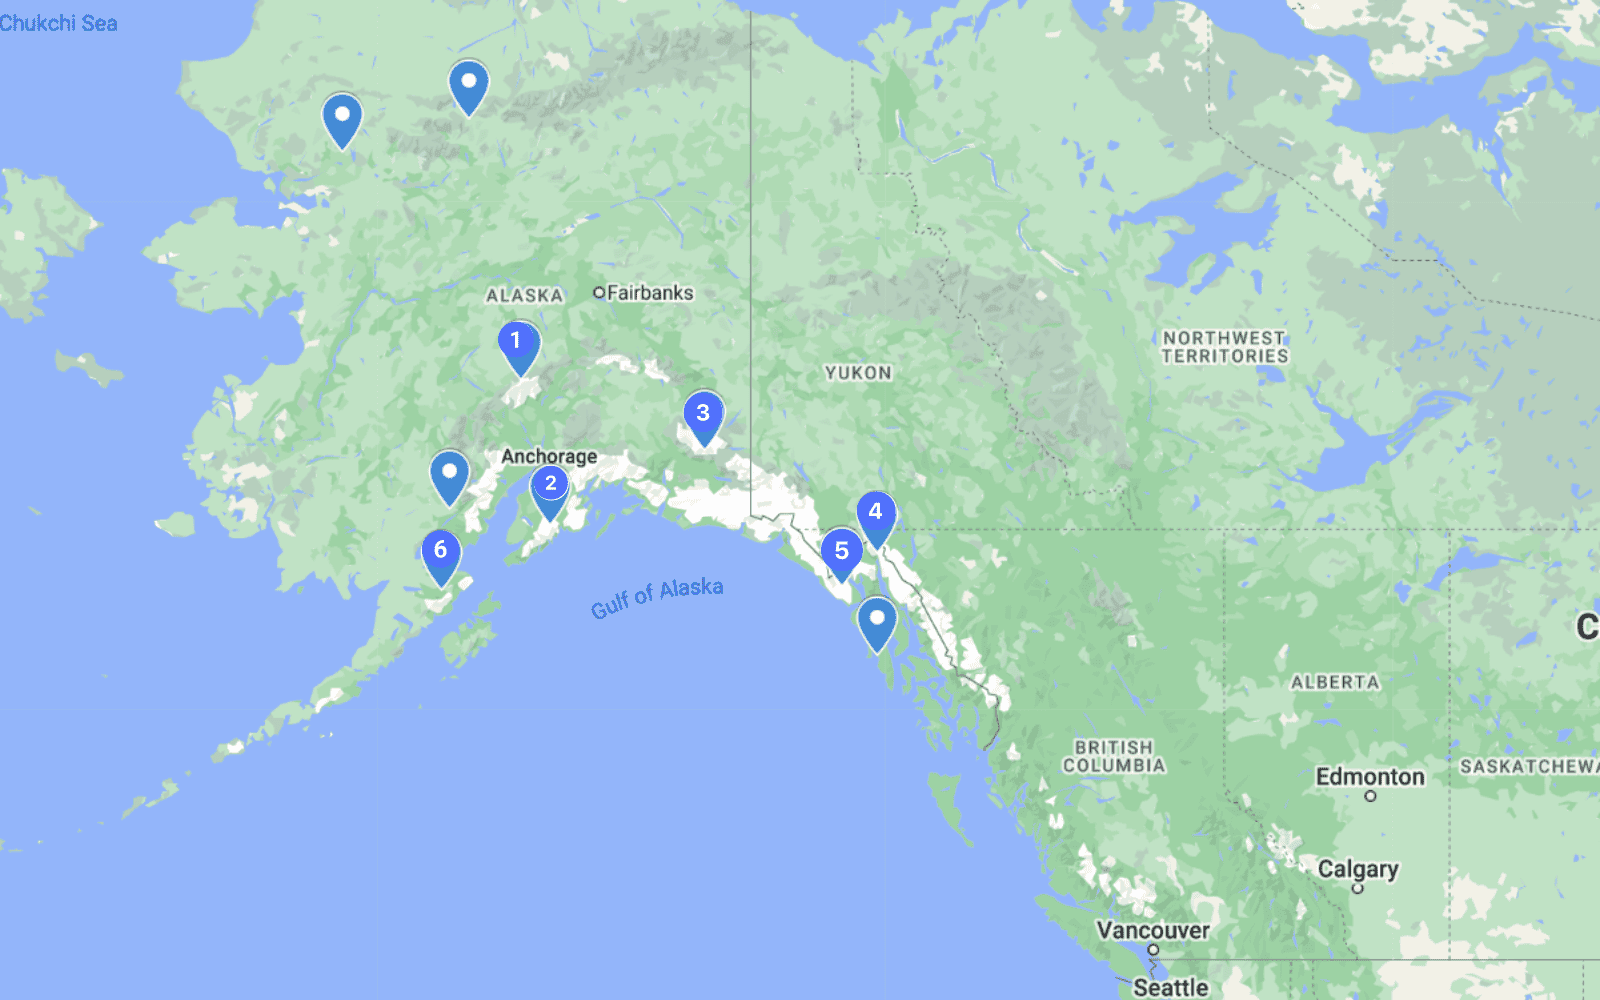 Alaska national Parks you can visit